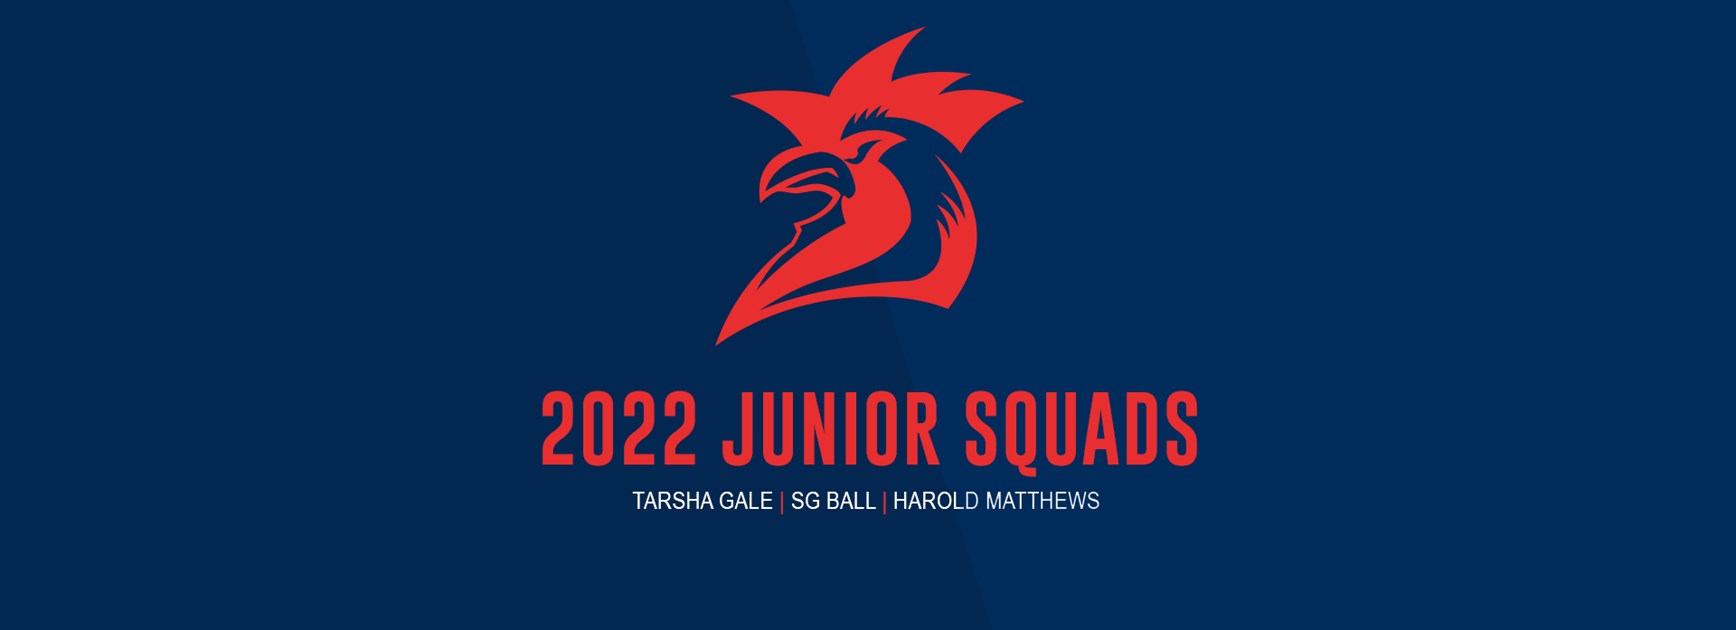 Junior Rep 2022 Squads Announced